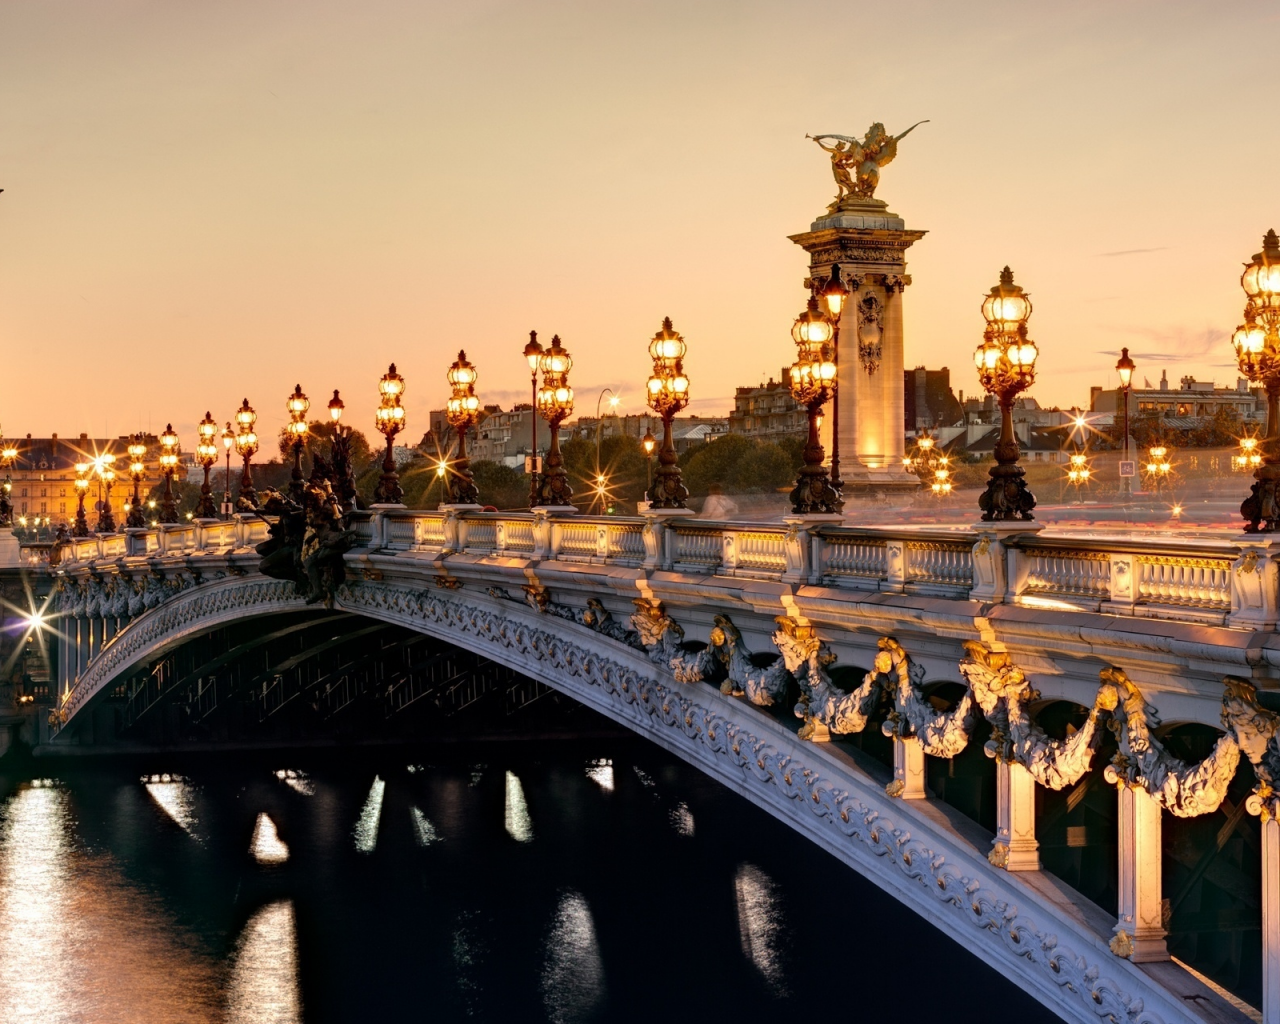 мост александра iii, France, париж, франция, paris, pont alexandre iii